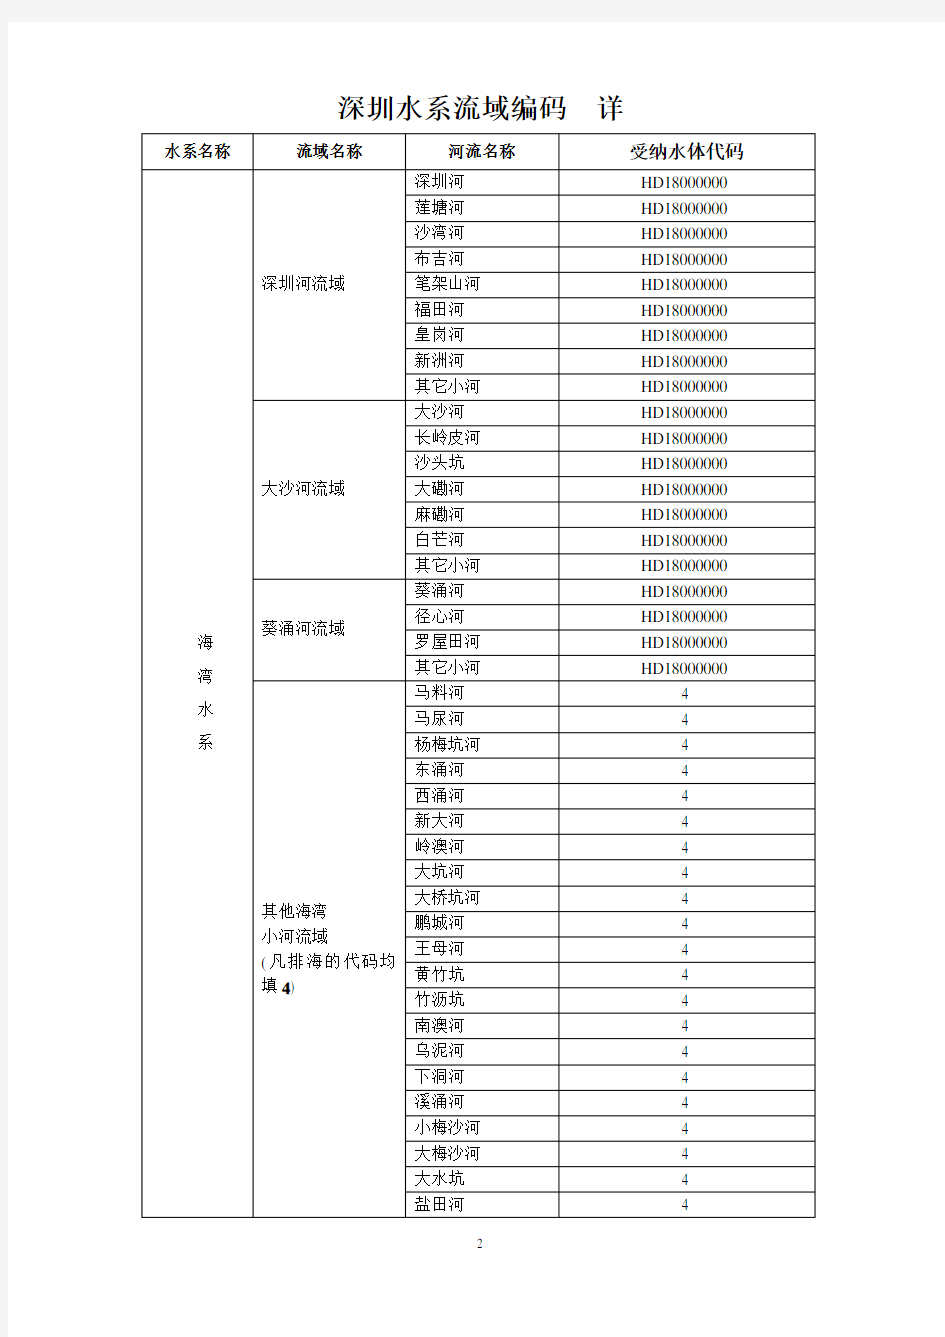 深圳市水系、流域名称及代码对照表 简